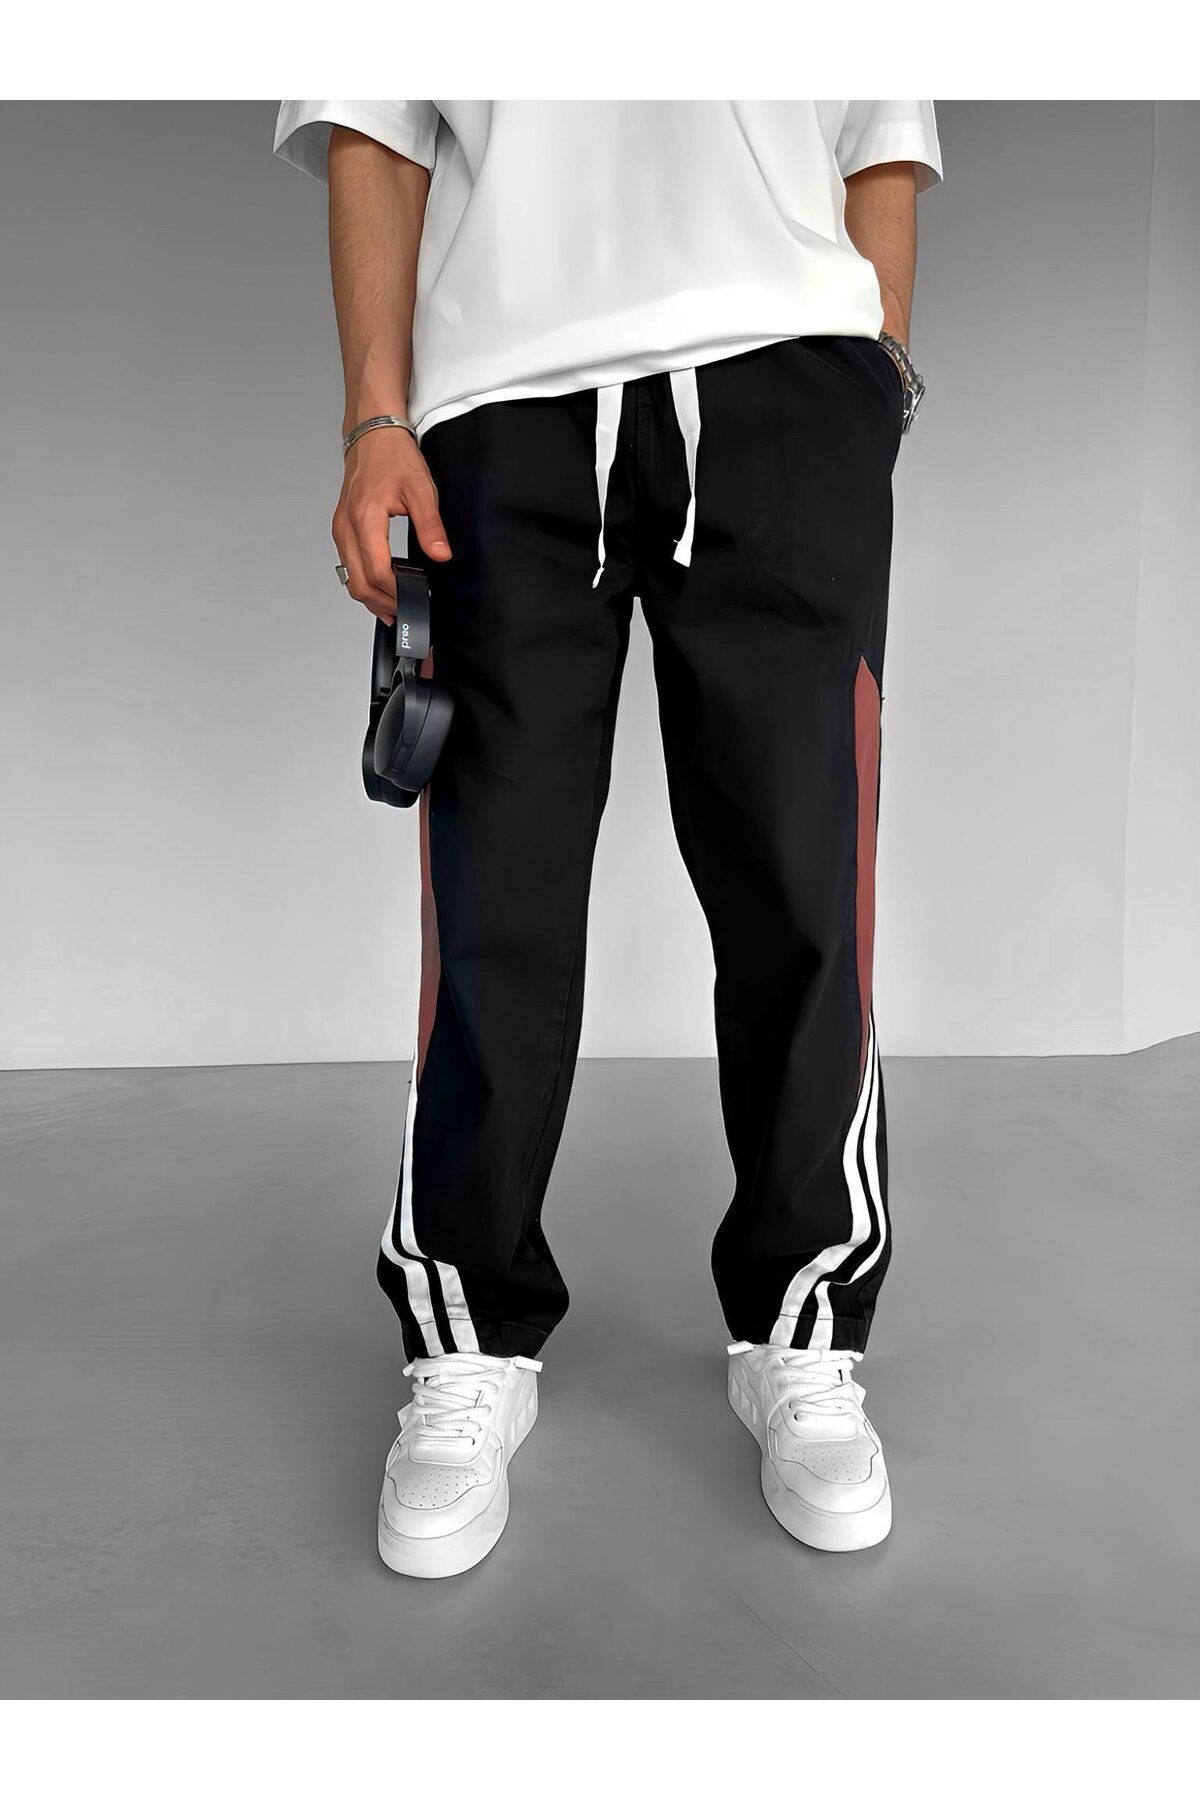 Ablukaonline Джинсовые брюки Baggy Fit Retro Line с эластичной резинкой на талии, черные JEN.0078